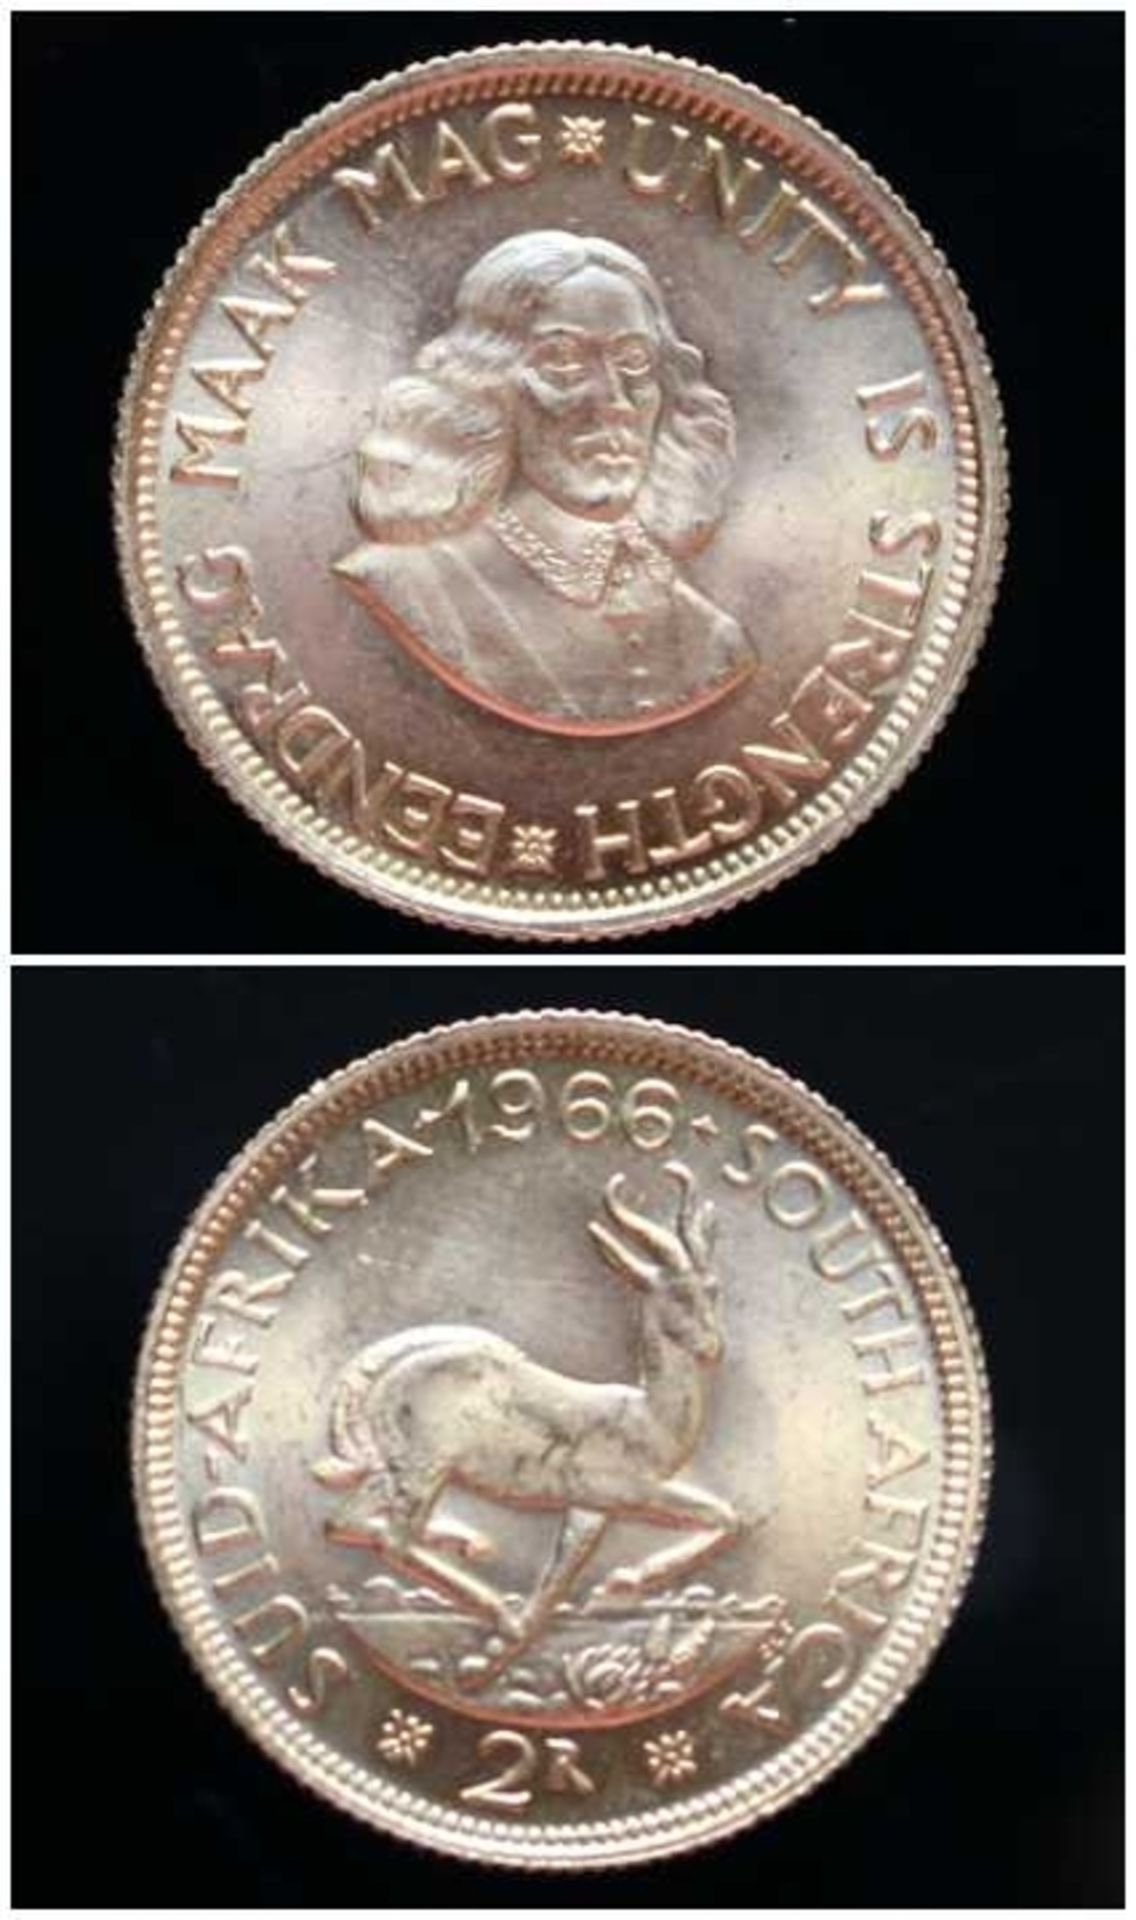 2 Rand Goldmünze - South Afrika 1966 Rs: Südafrikanisches Wappentier Springbock, Vs: Portrait von